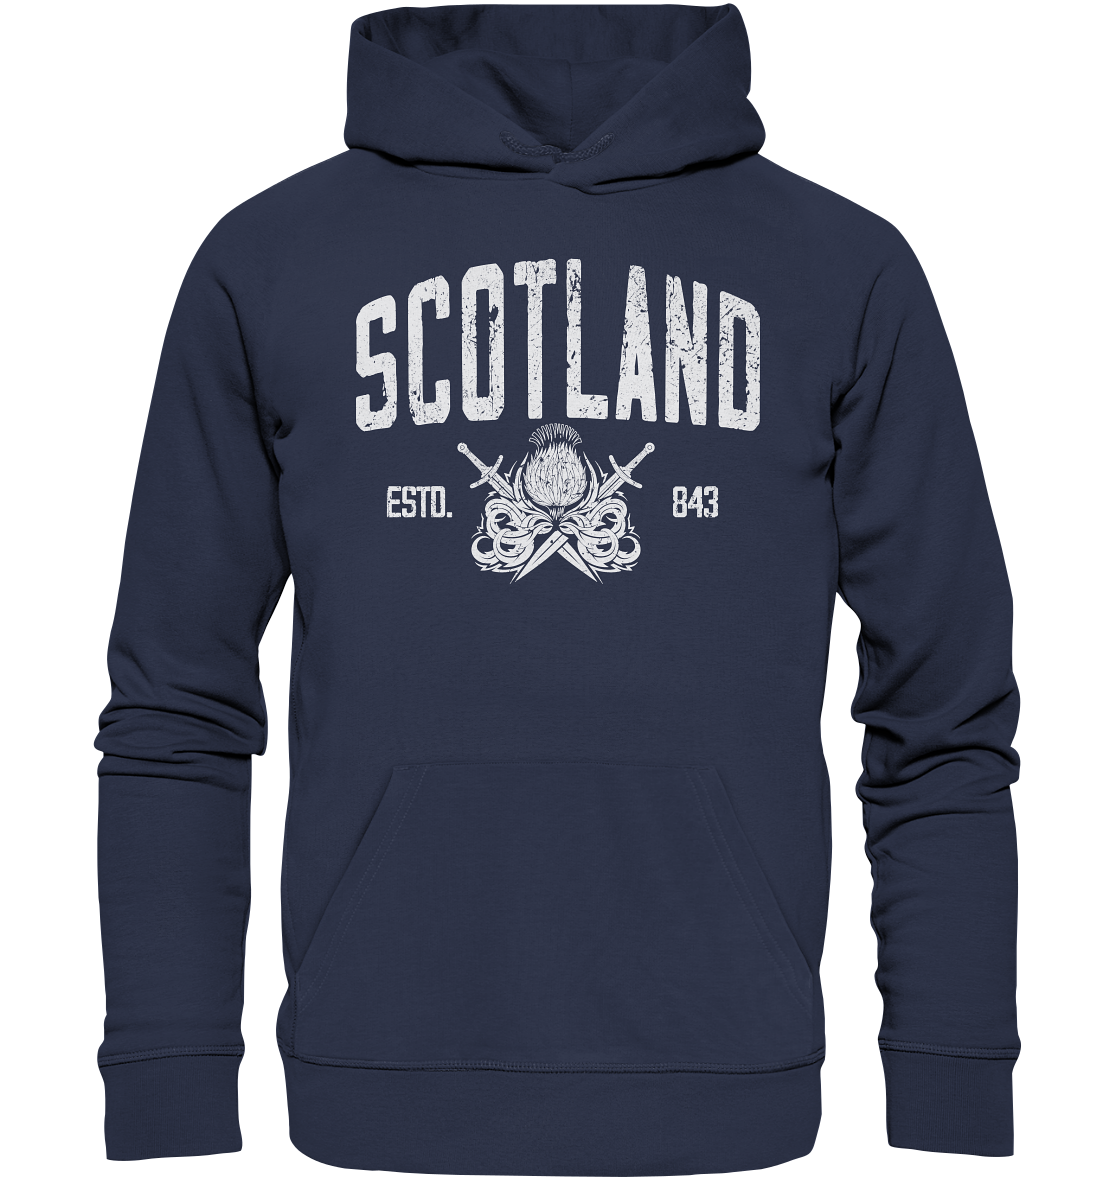 Scotland "Estd. 843" - Premium Unisex Hoodie